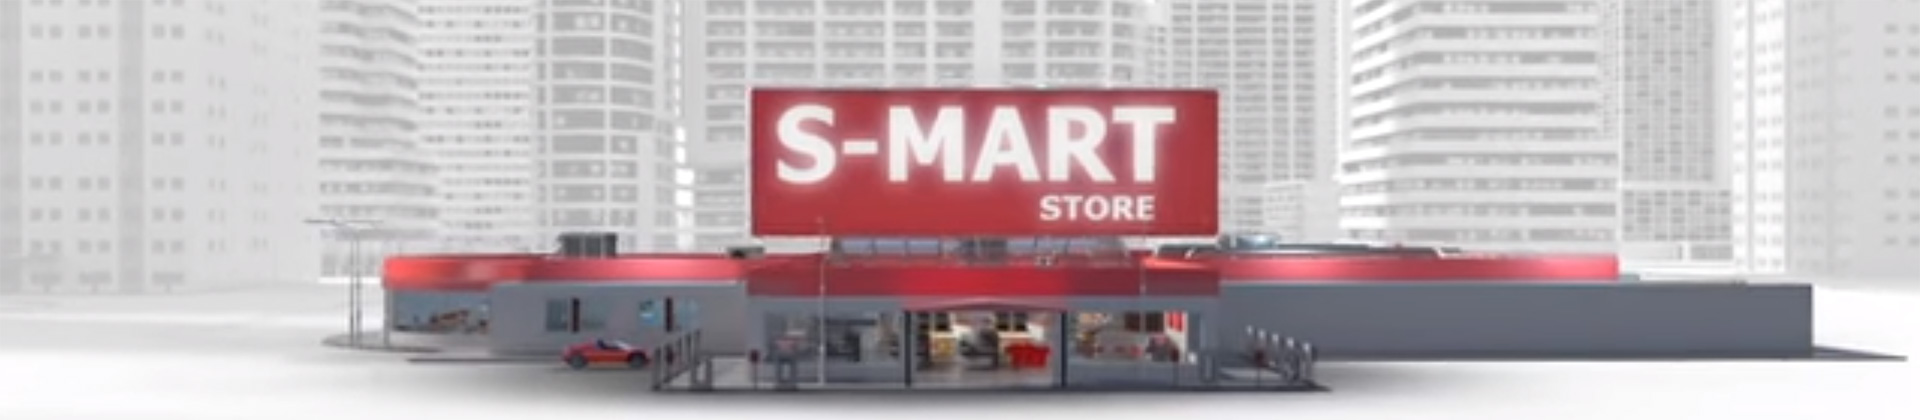 Vídeo Smart Store - Danfoss